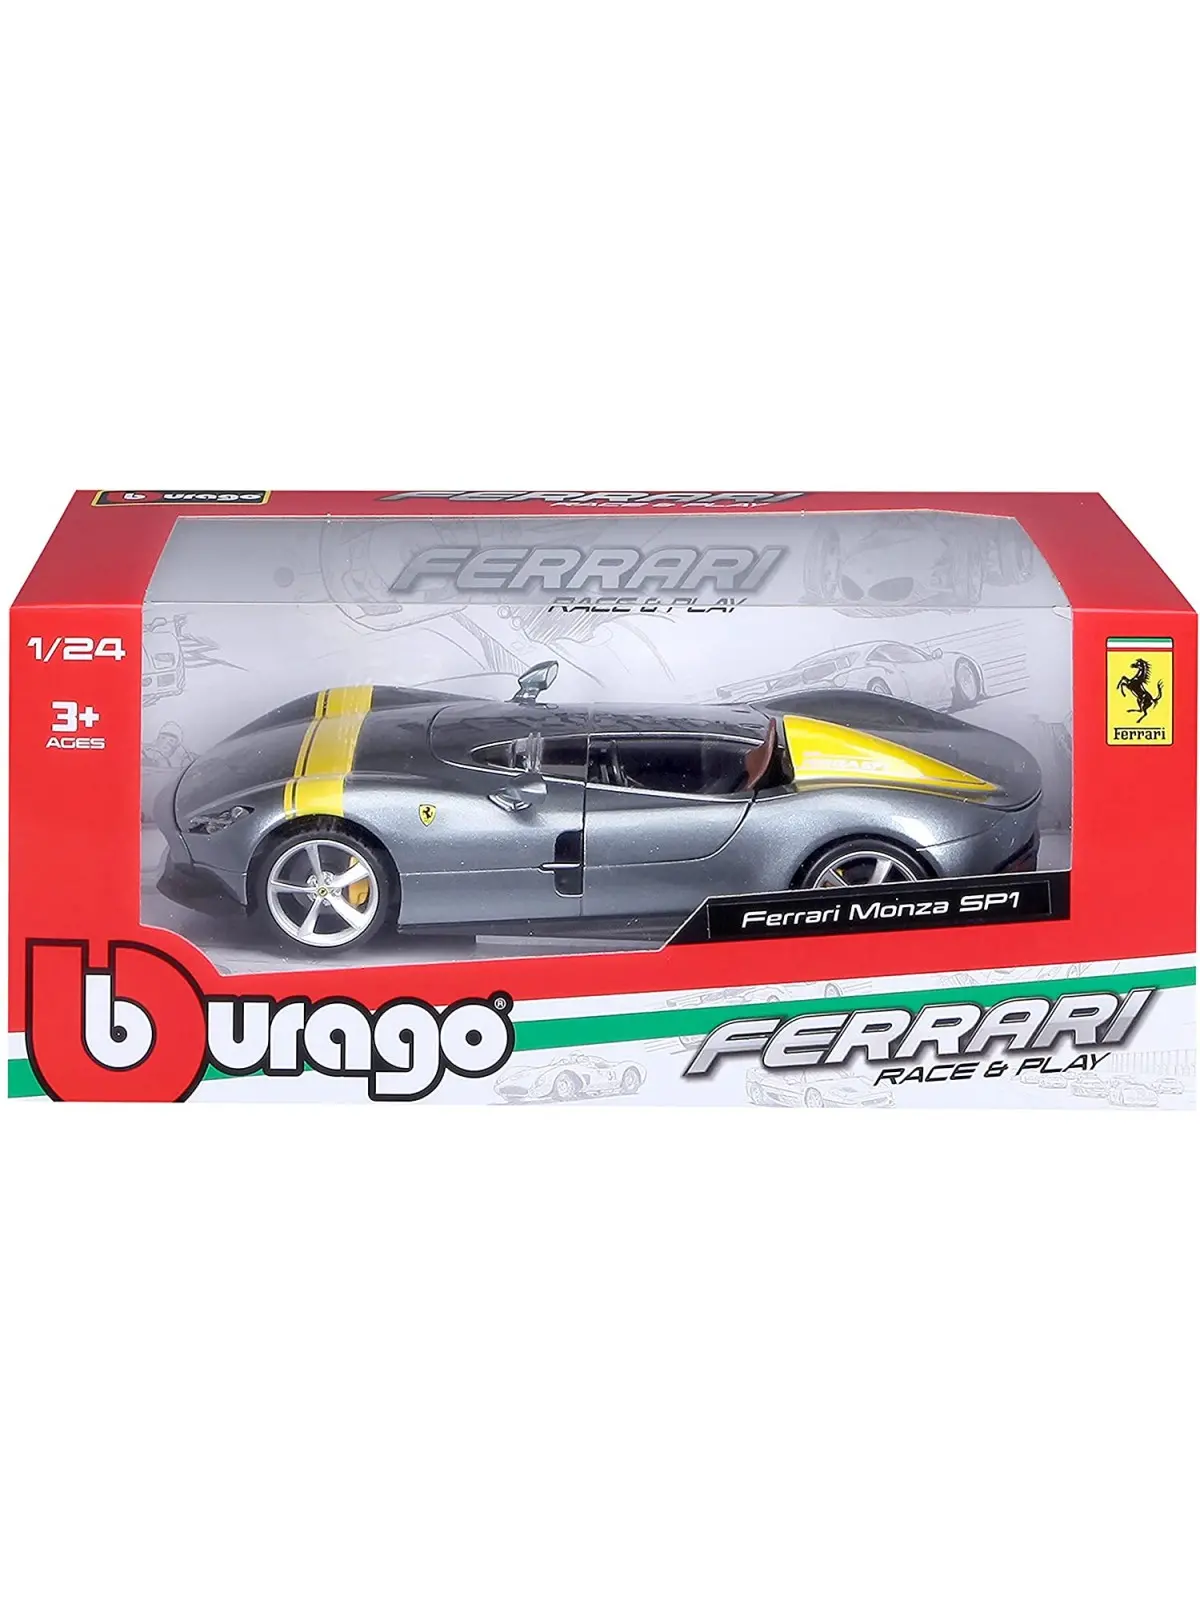 Burago R&P Ferrari Monza SP1 Scala 1/24